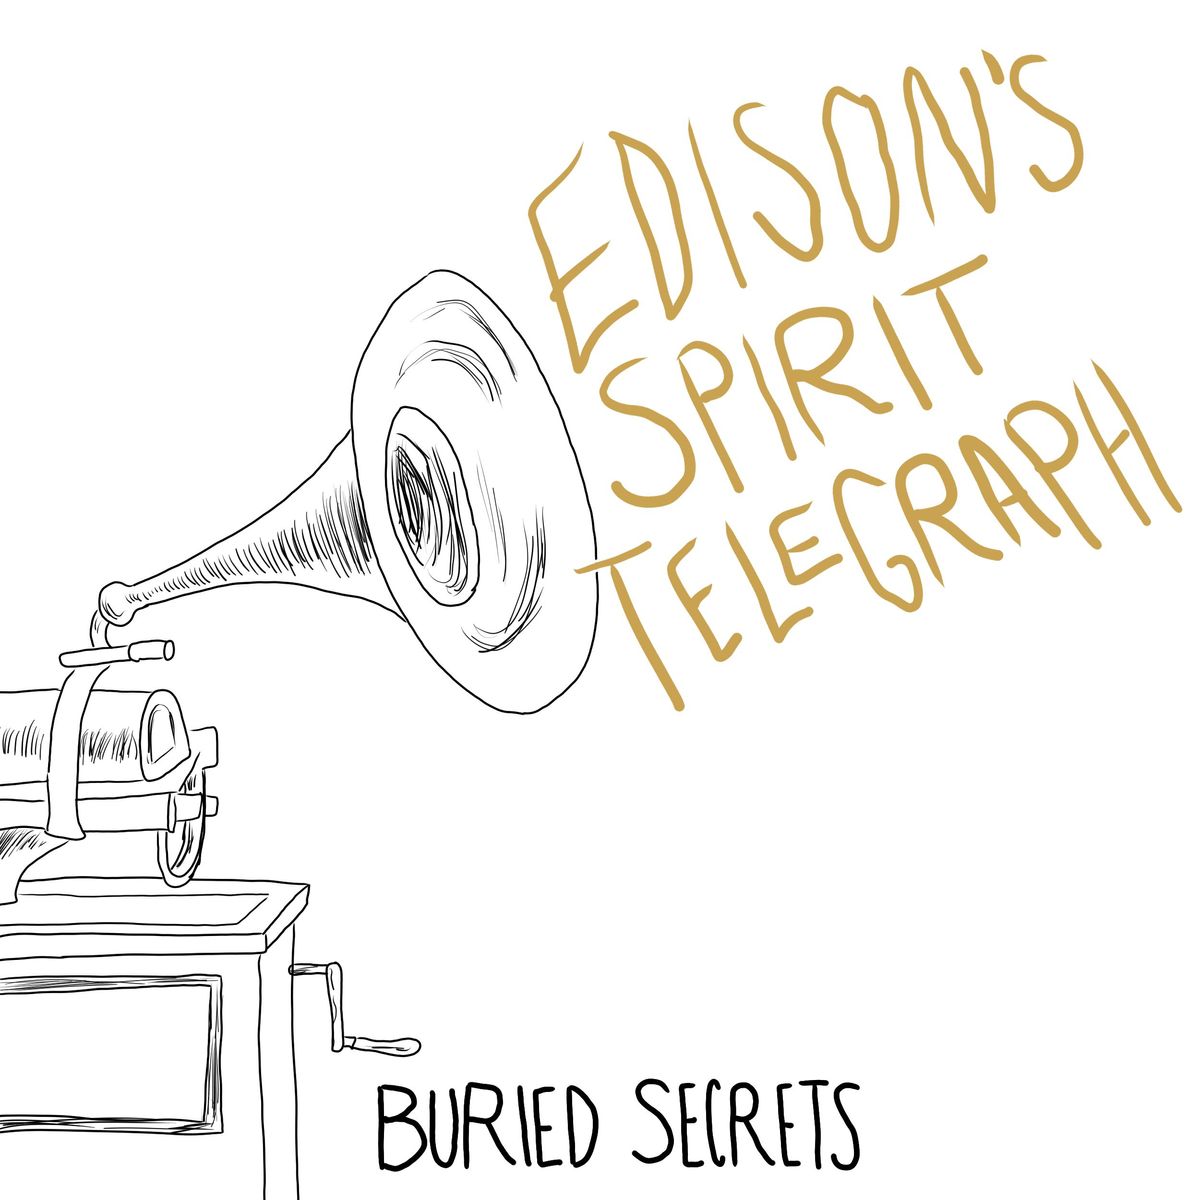 Thomas Edison's Spirit Telegraph